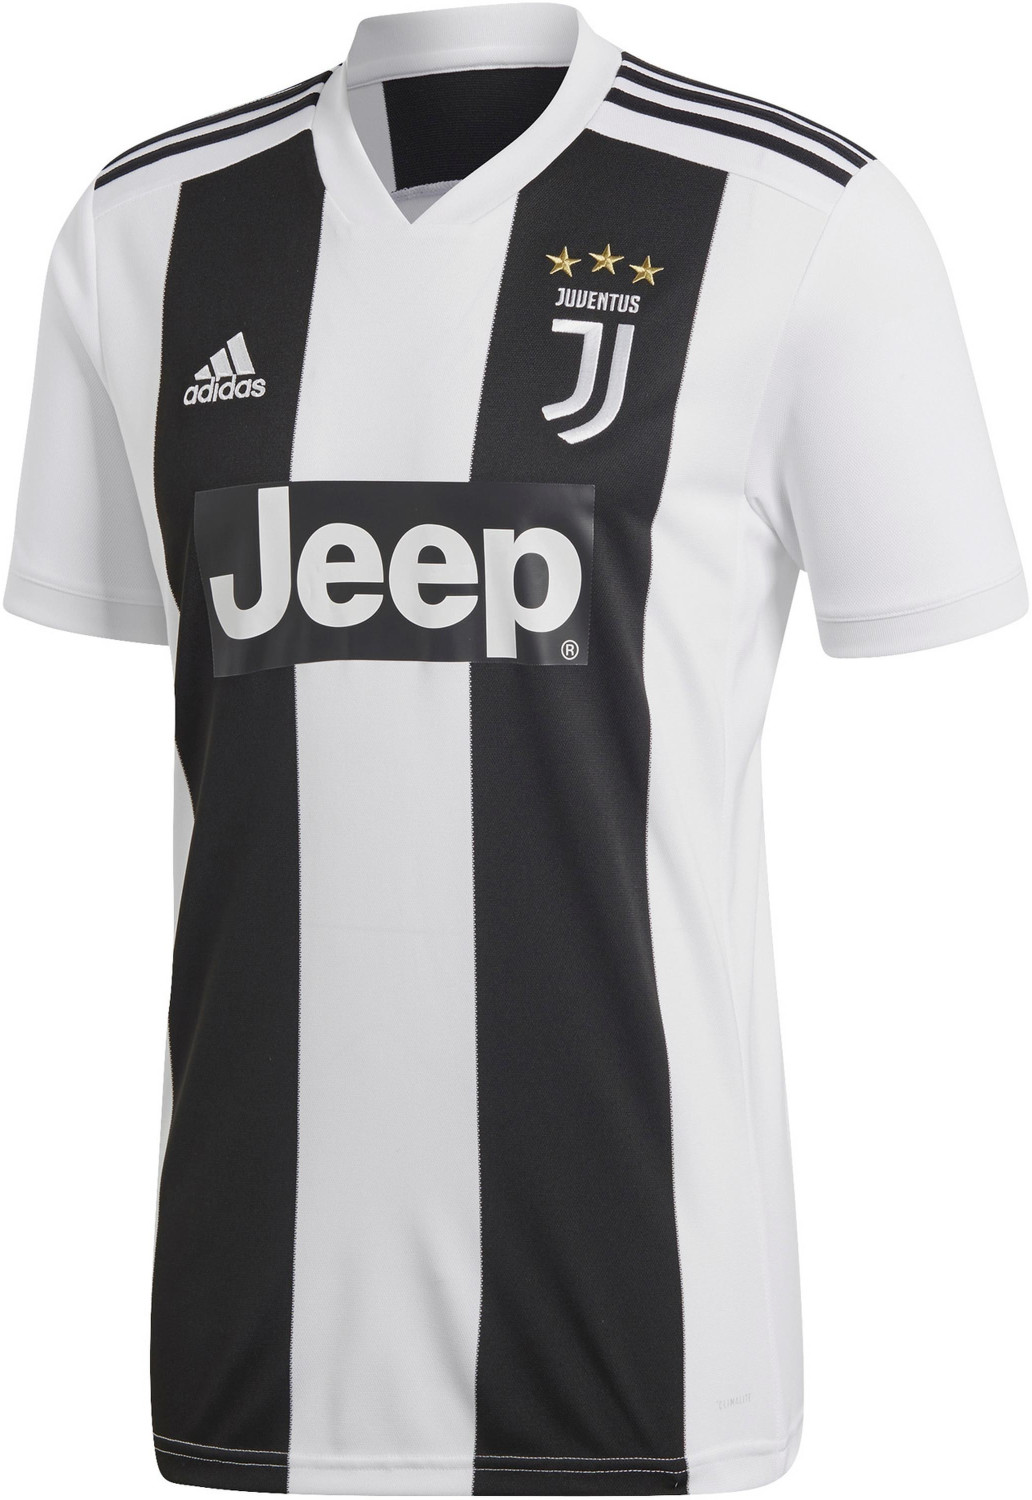 Adidas Juventus Maglia Home Replica 2018/2019